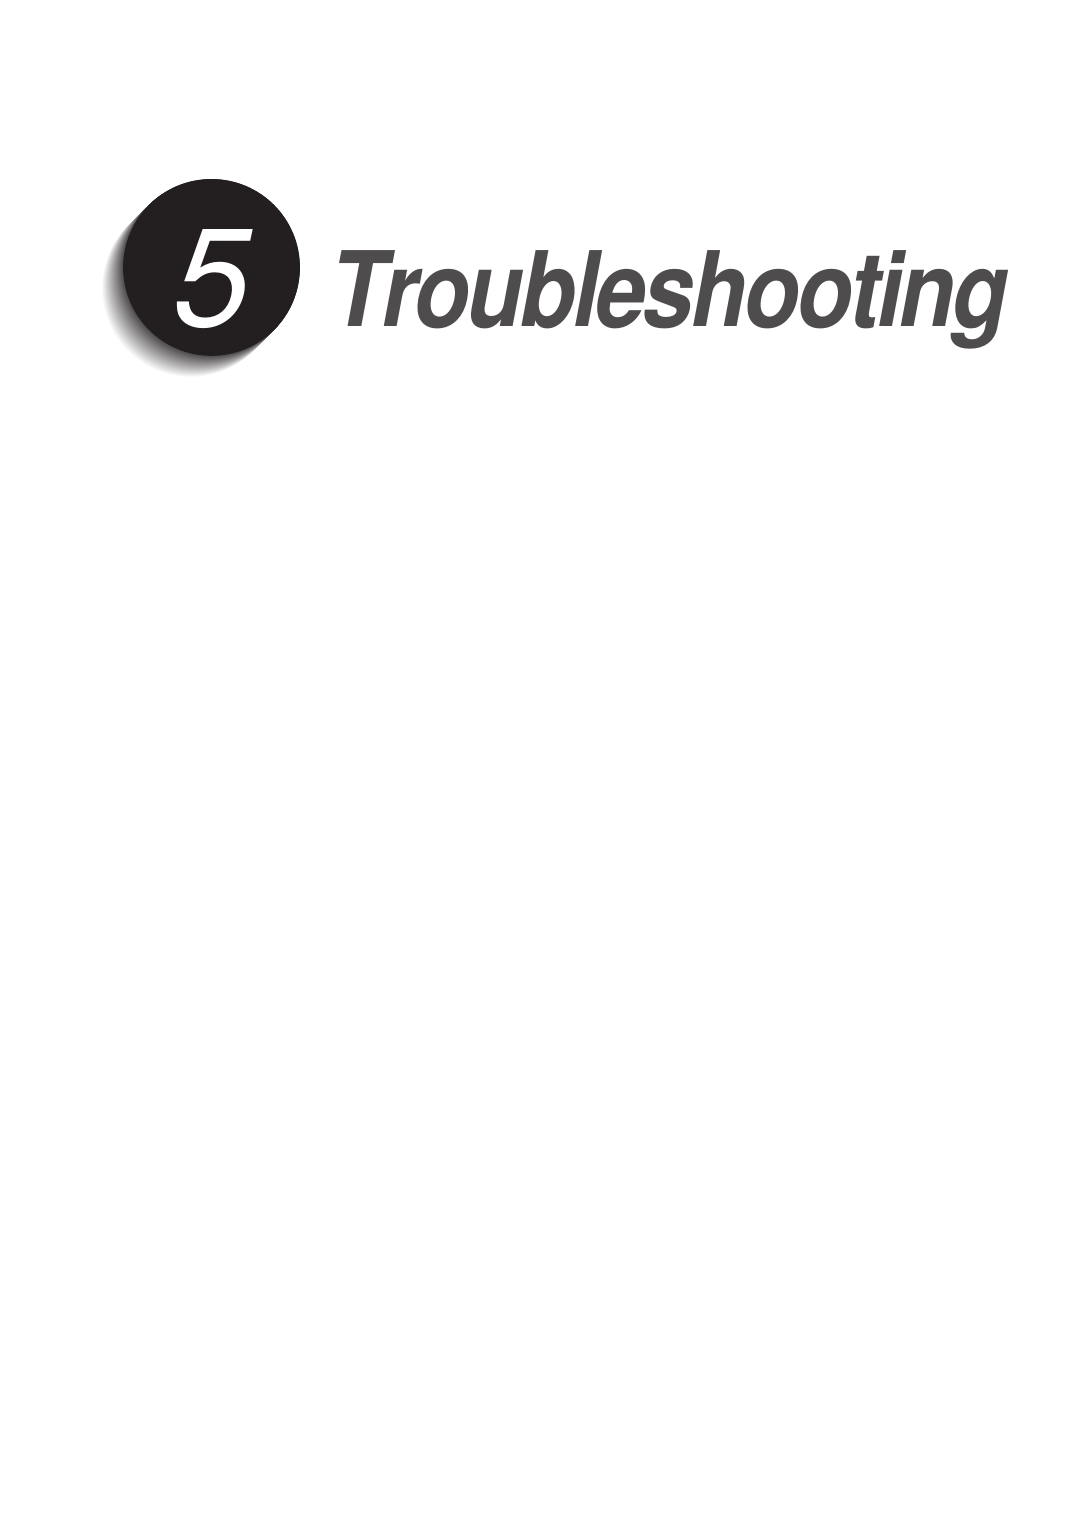 Troubleshooting5